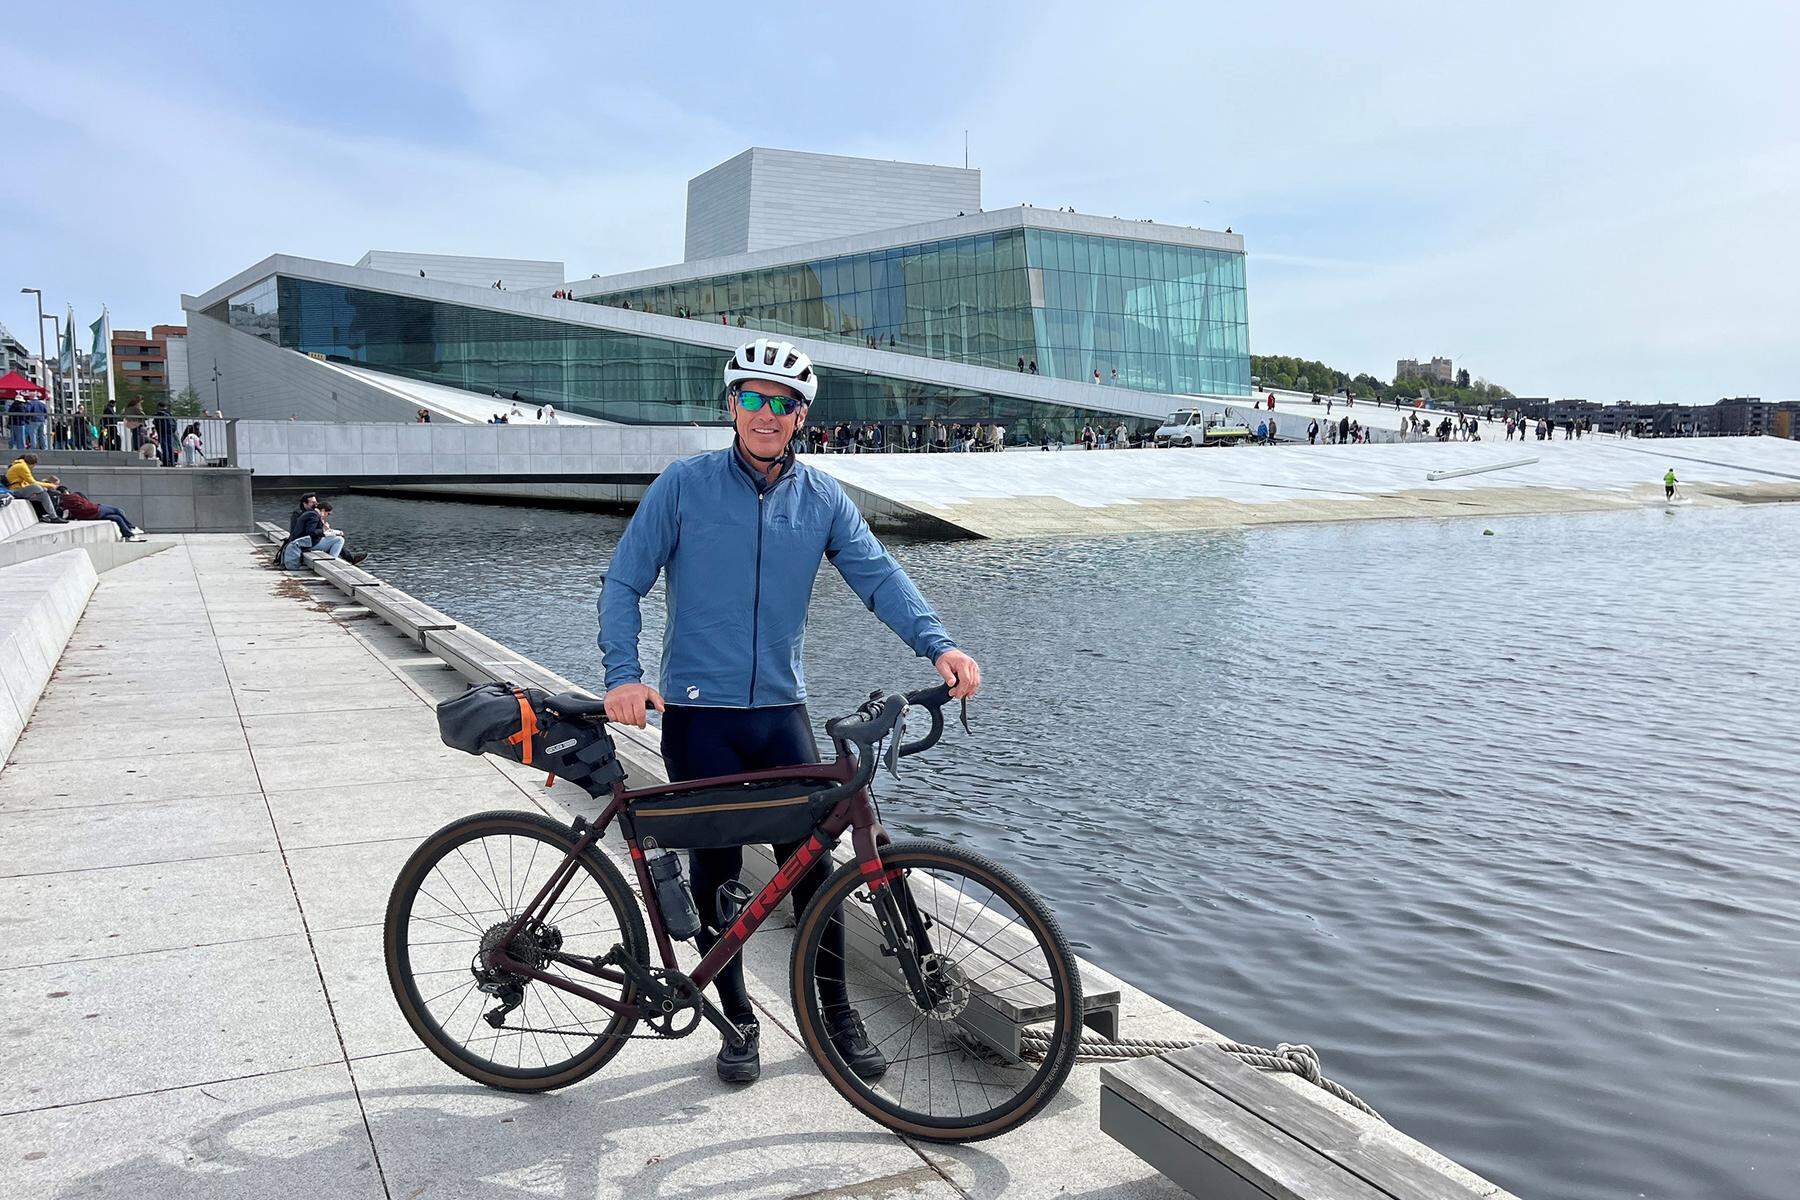 2000 Kilometer mit dem Rad: Auf dieser Reise nach Norwegen kriegt man stramme Wadln wie ein Wikinger